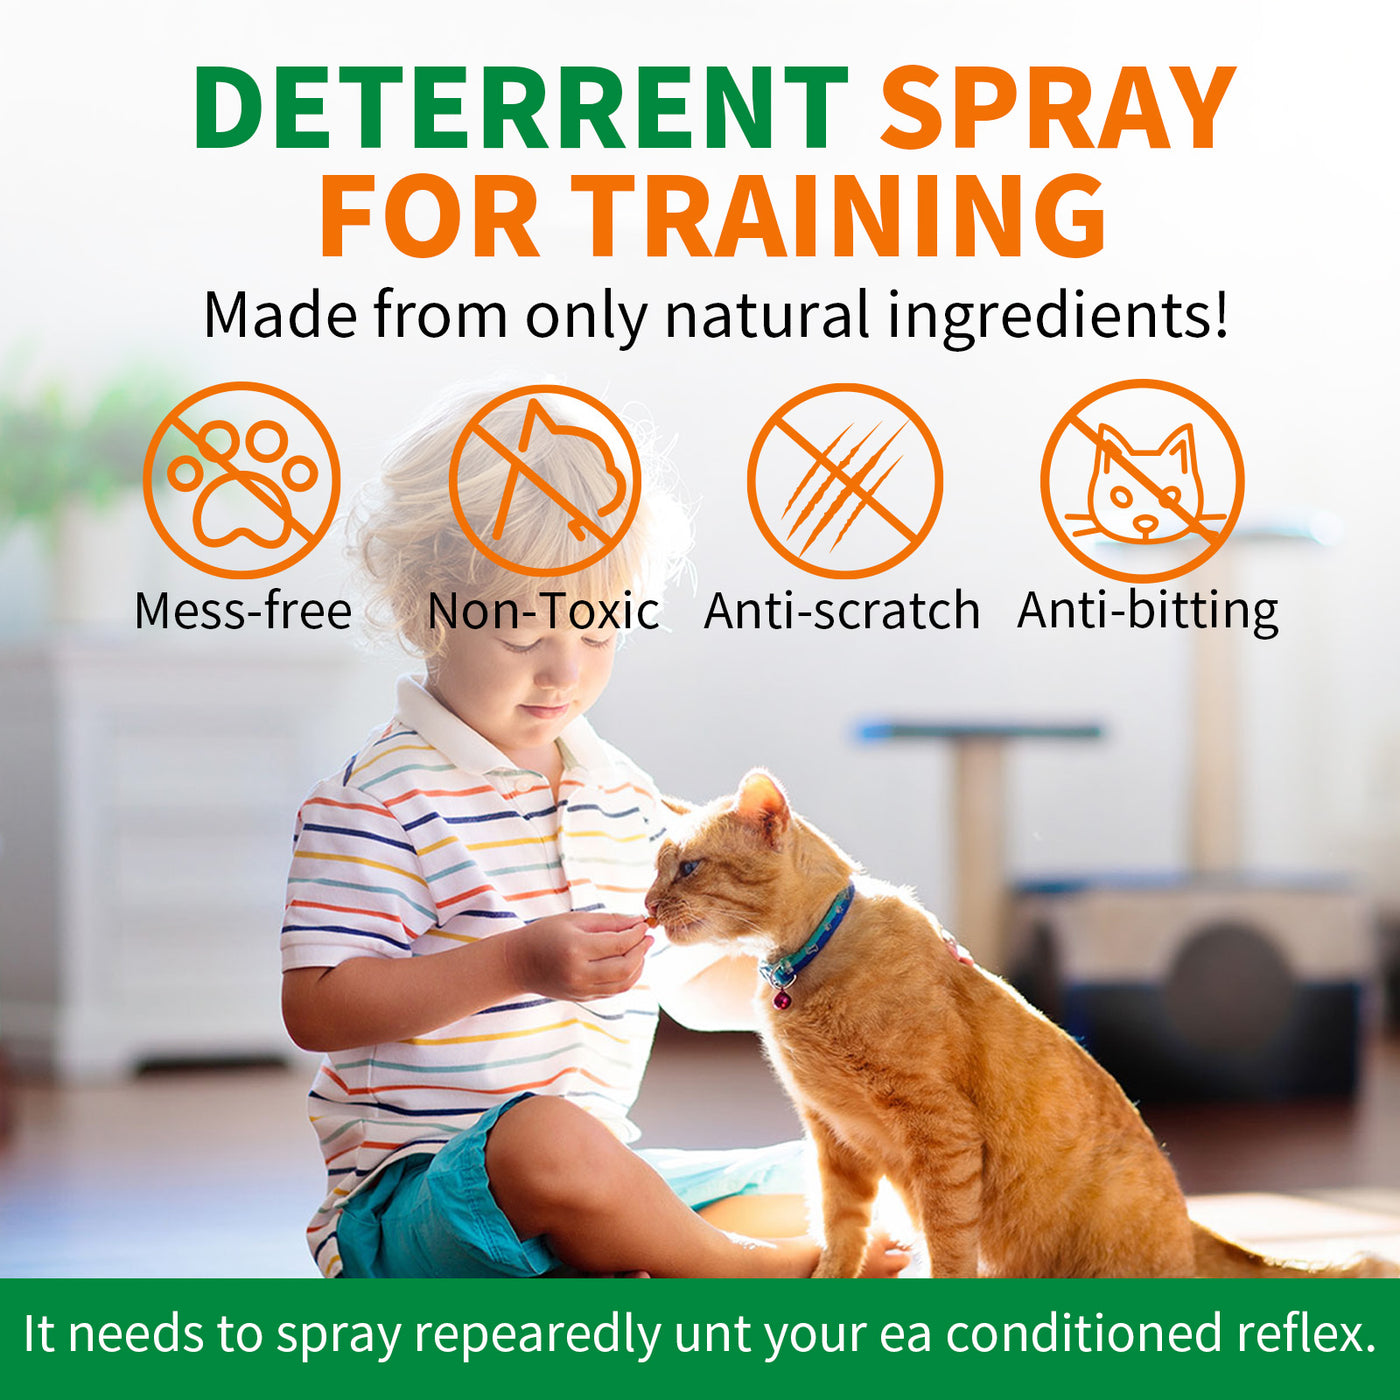 Oimmal Cat Spray Deterrent - 2 Packs